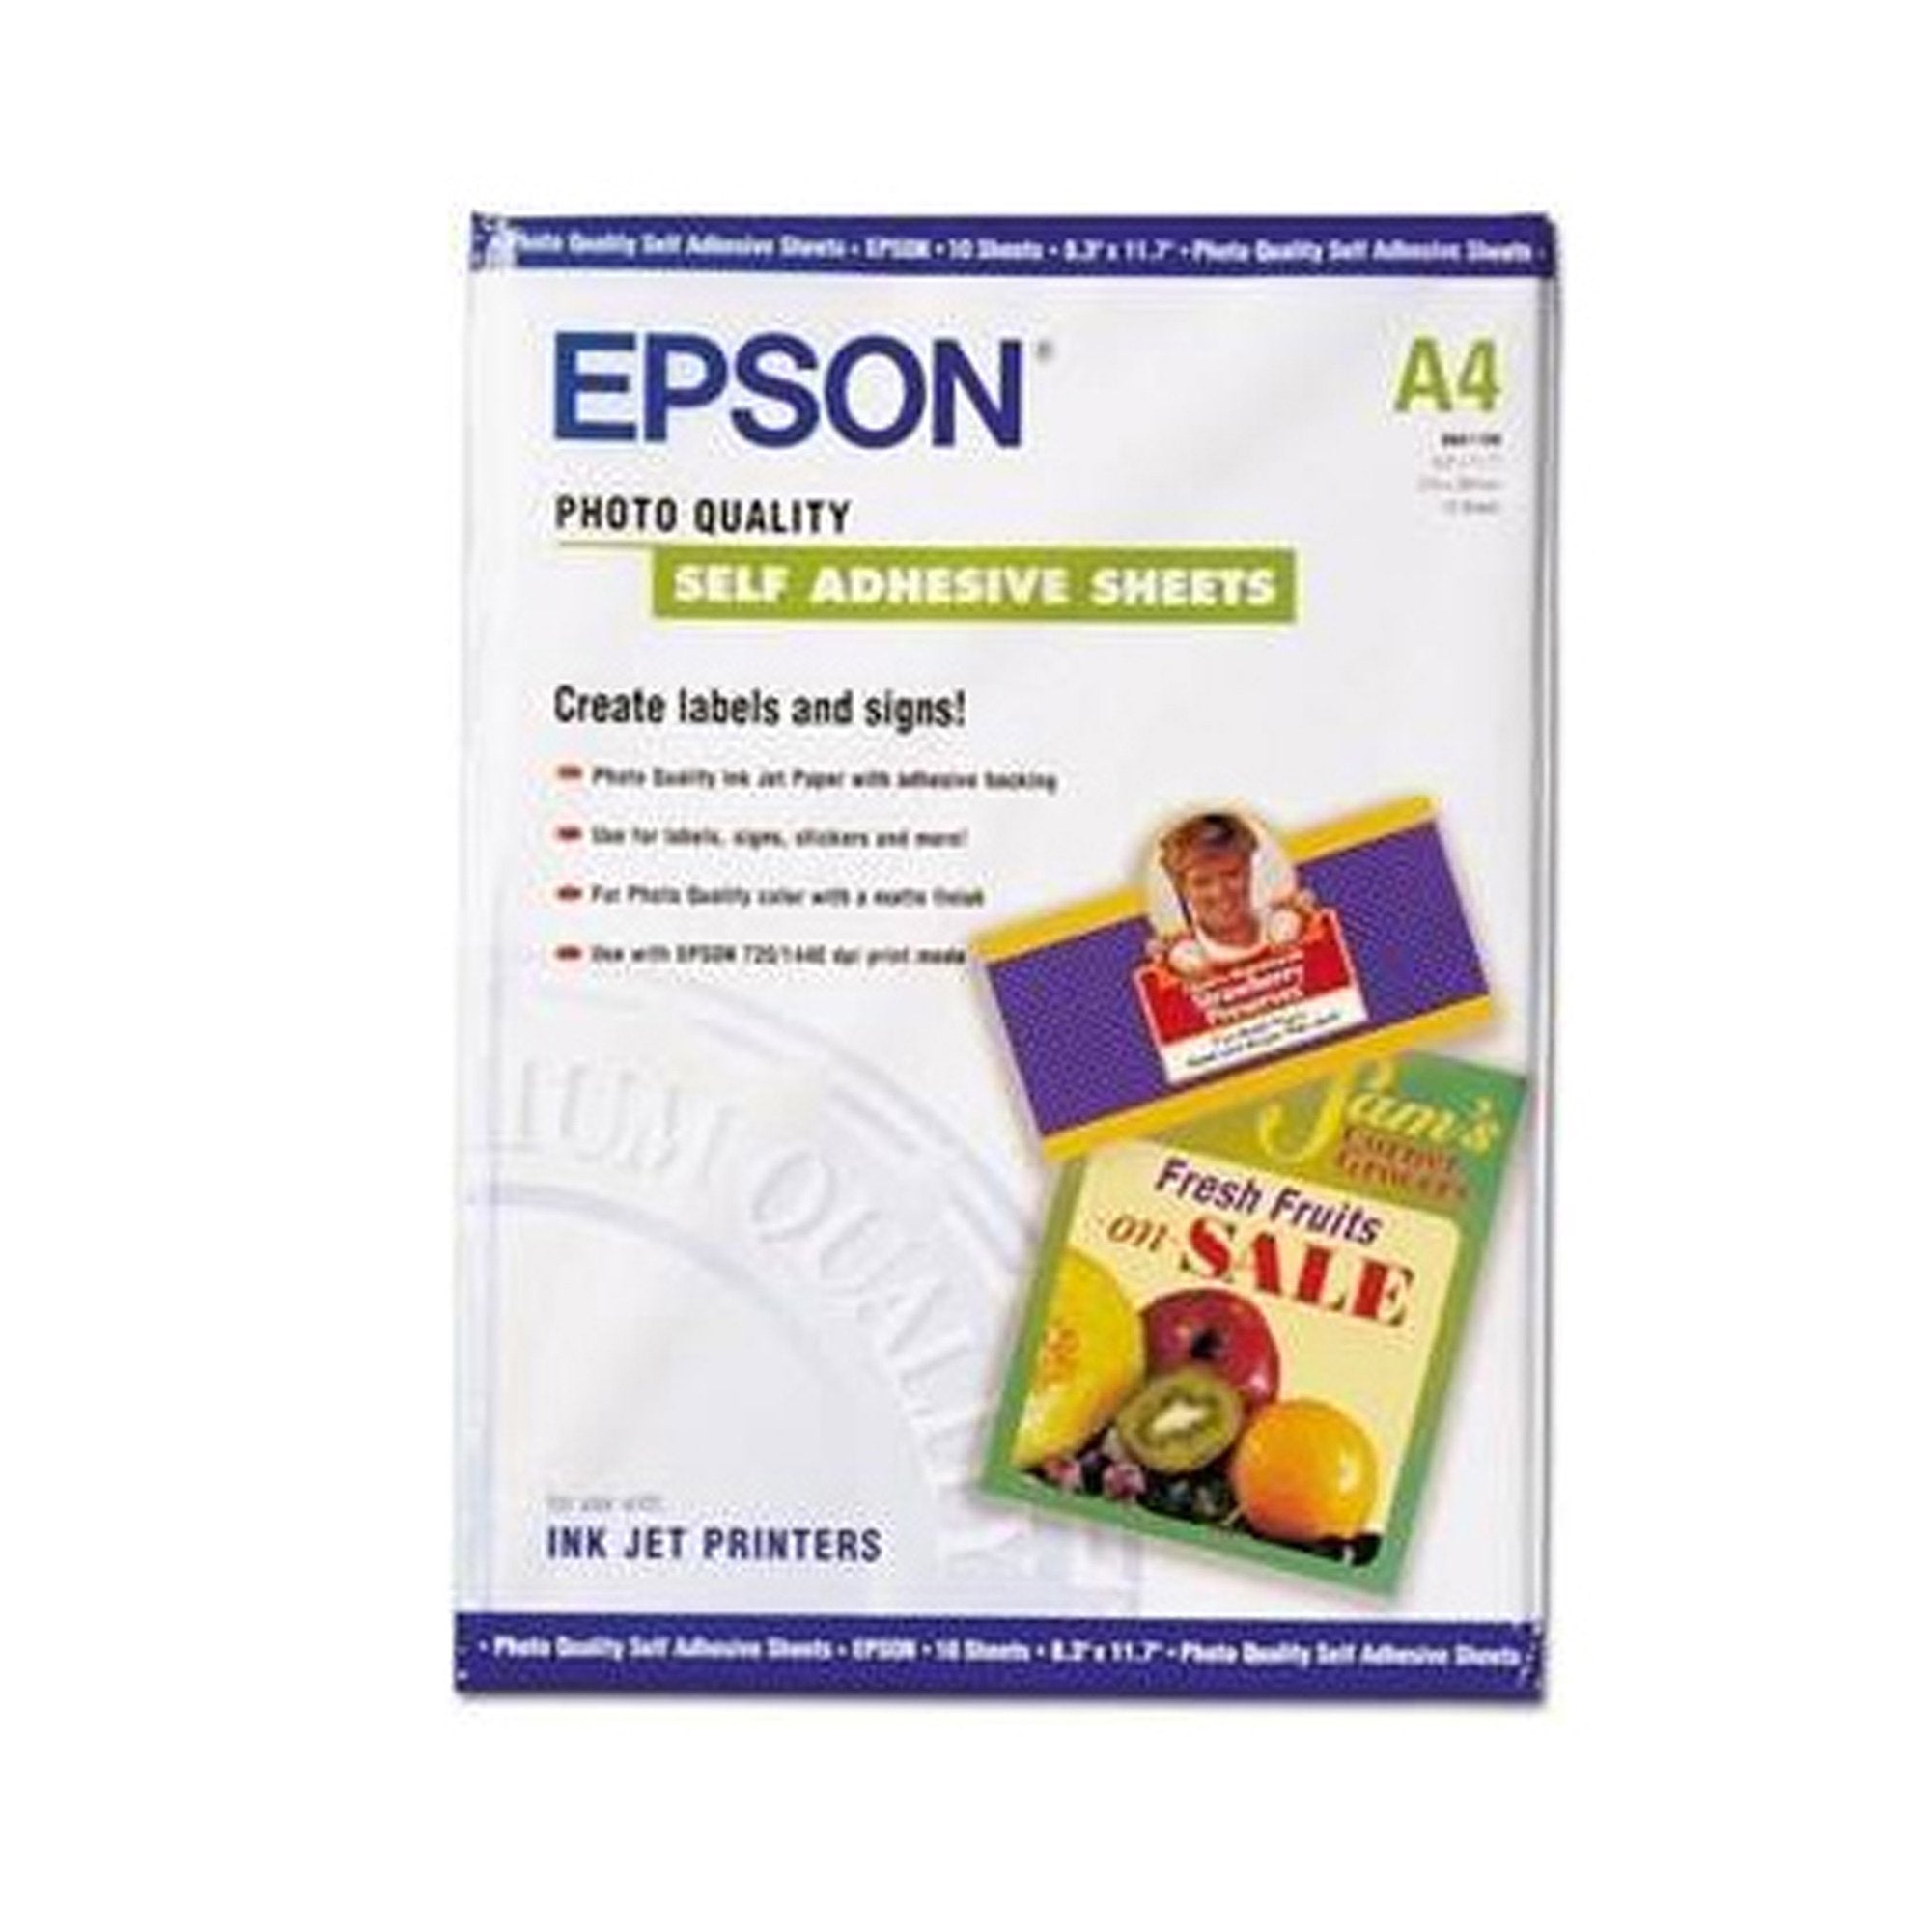 epson-carta-fotografica-inkjet-adesiva-10fg-167gr-210x297mm-a4